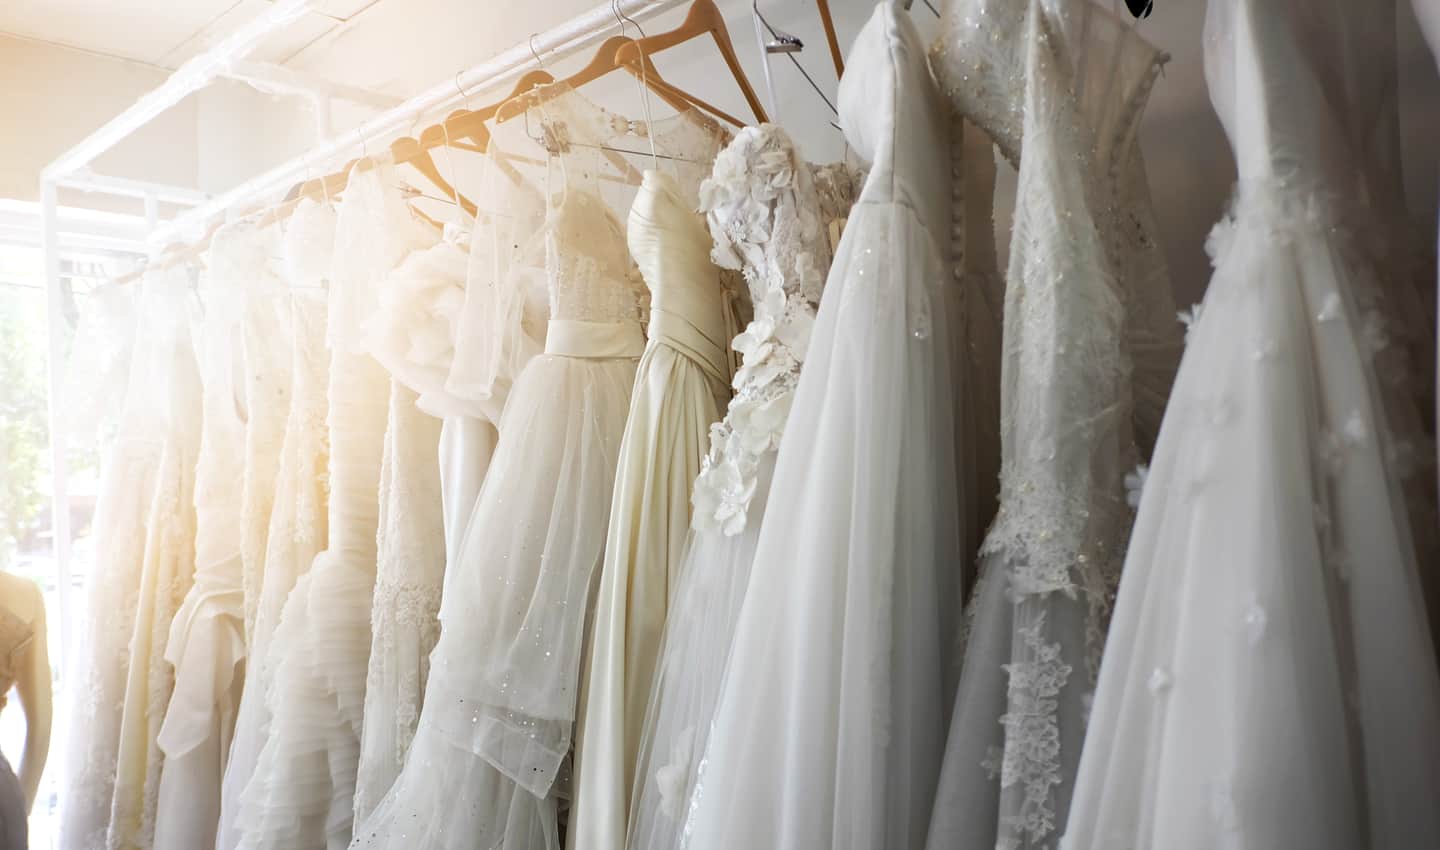  5 най-добри места за продажба на сватбени рокли онлайн